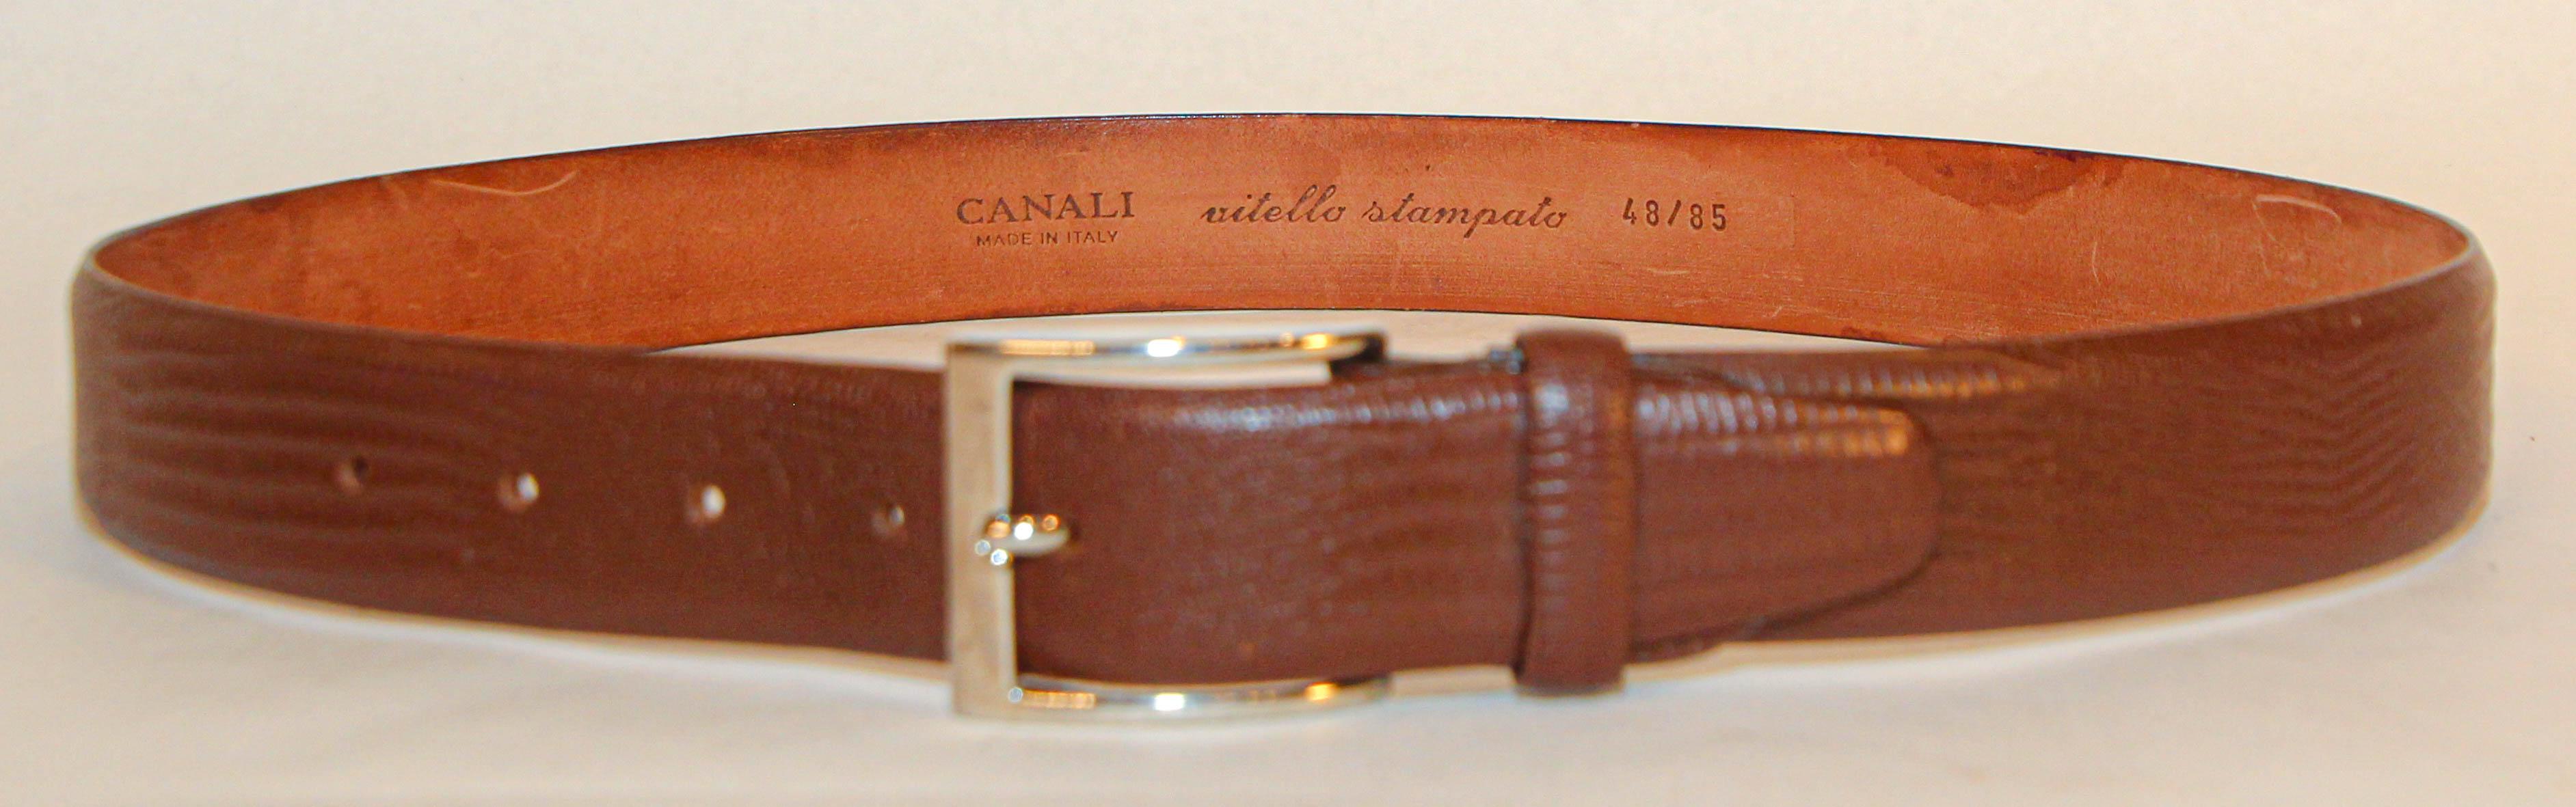 Canali Italian Texture brauner Ledergürtel Vitello Stampato.
Texturierter brauner Kiesel-Ledergürtel Größe 48/85.
Hergestellt in Italien.
Maße: ca. 37